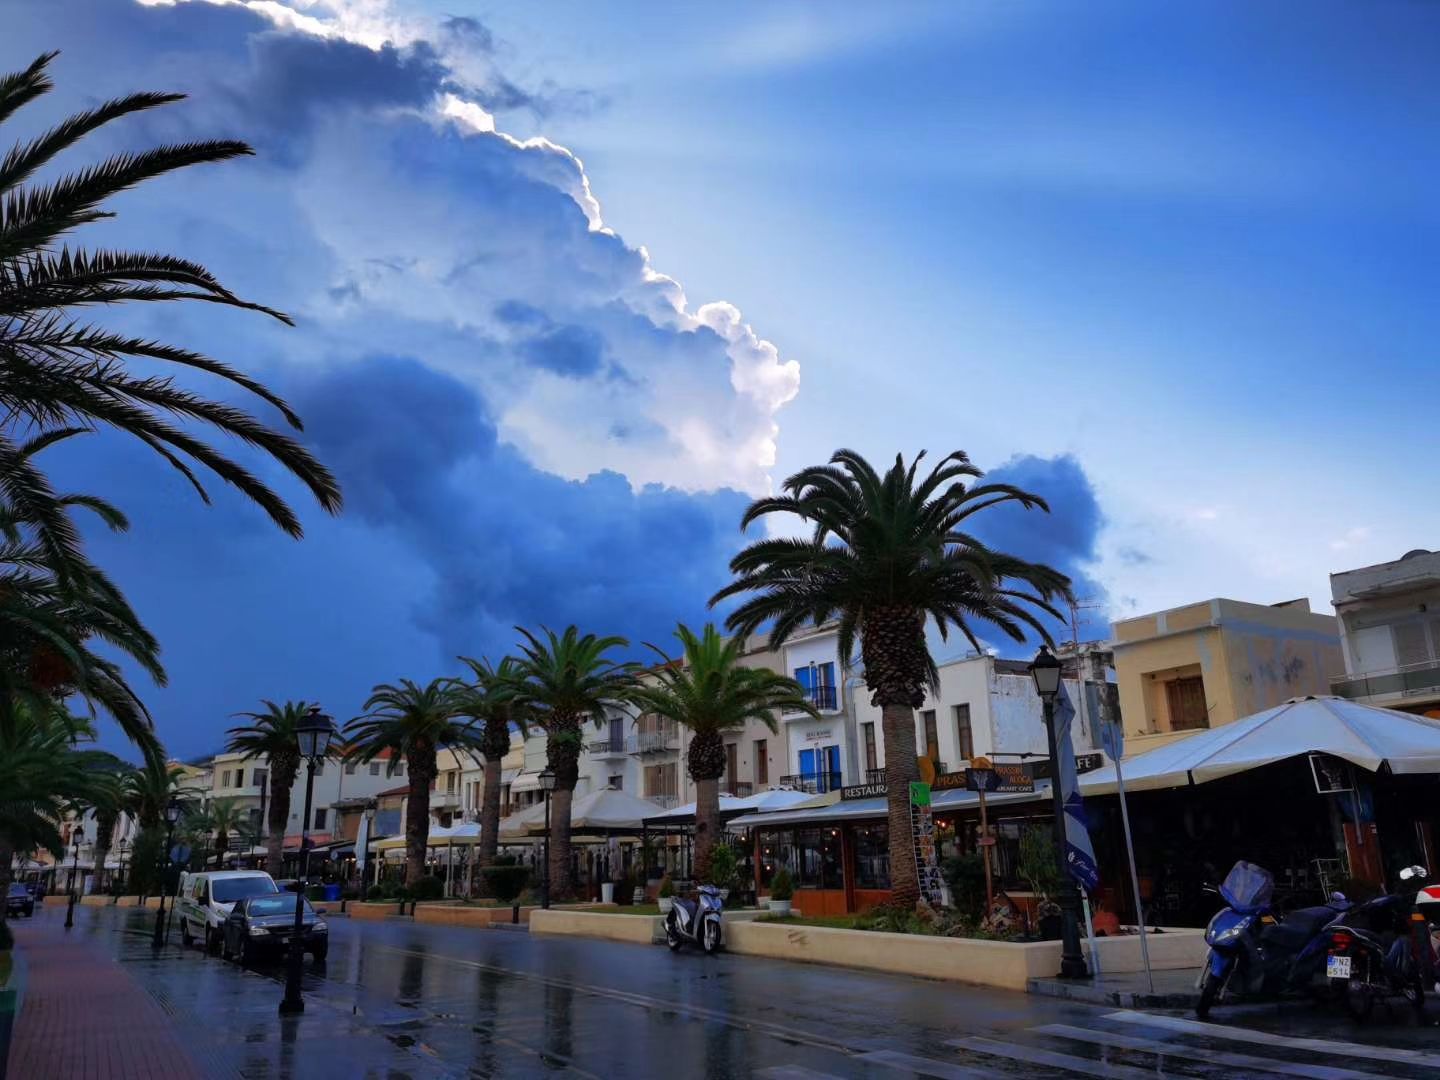 到达Rethymno时还在下雨，一停车雨就停了，这个海港城市，真的喜欢！